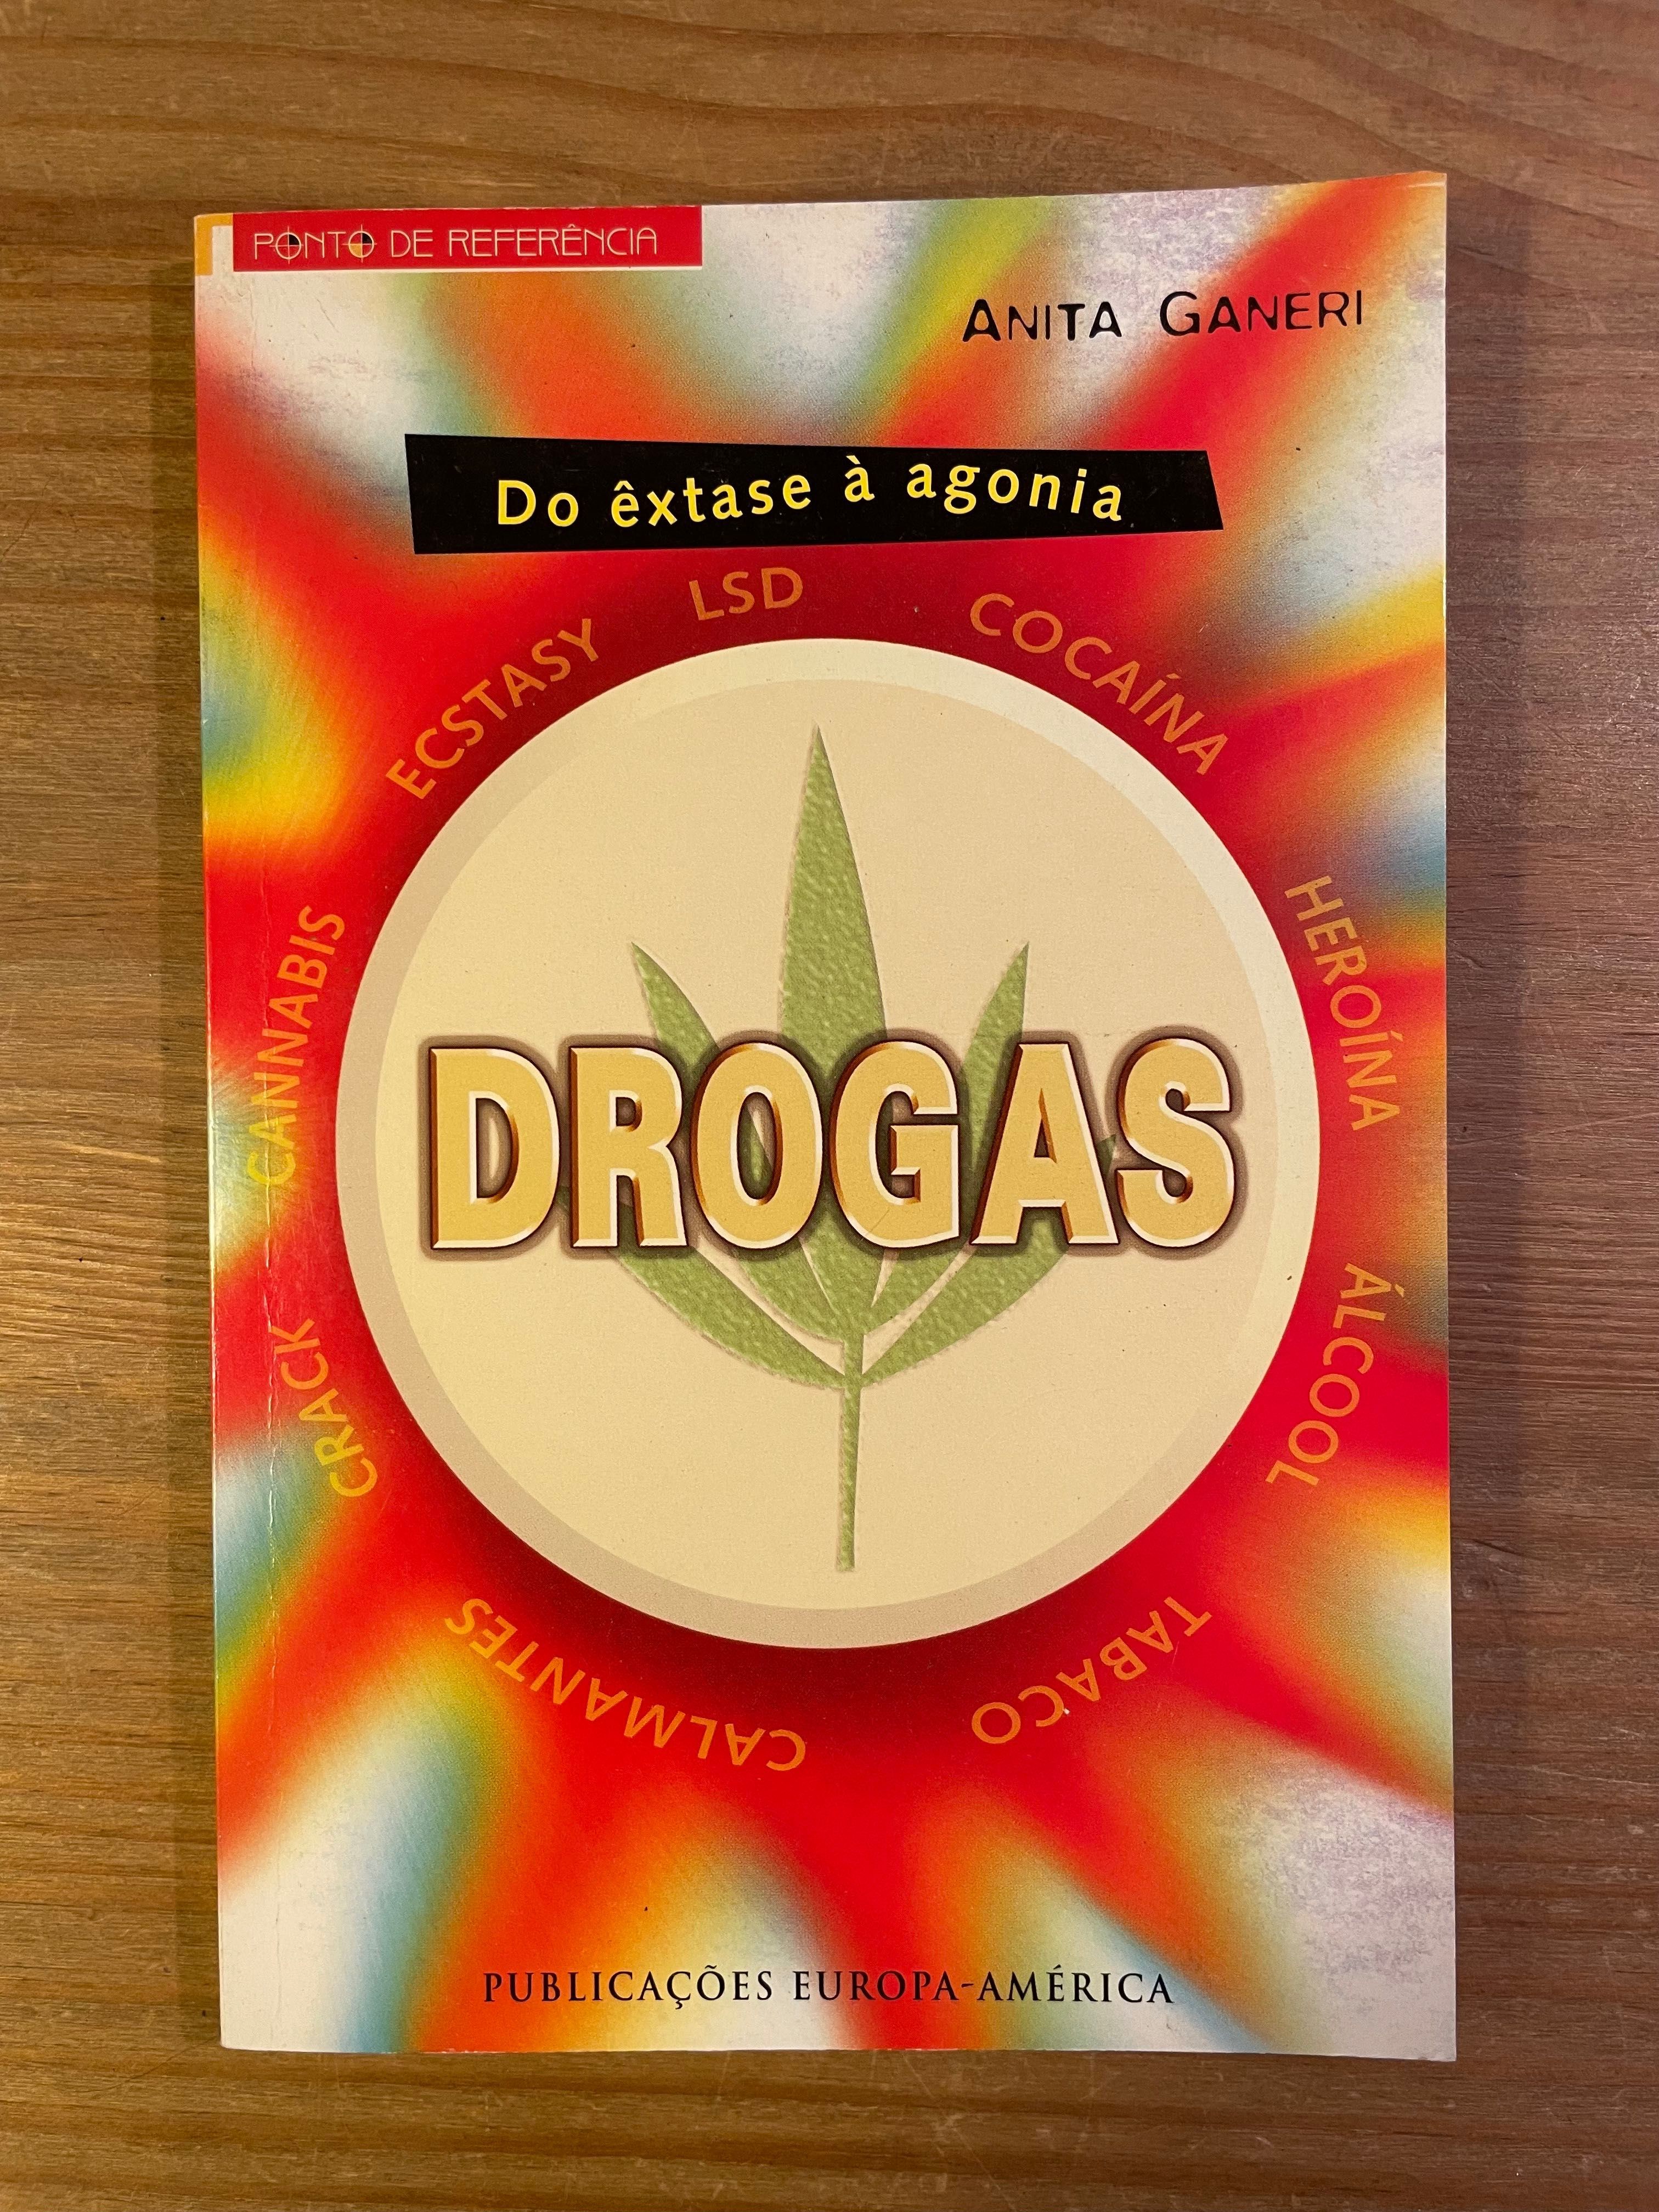 Drogas - Do Êxtase à Agonia - Anita Ganeri (portes grátis)